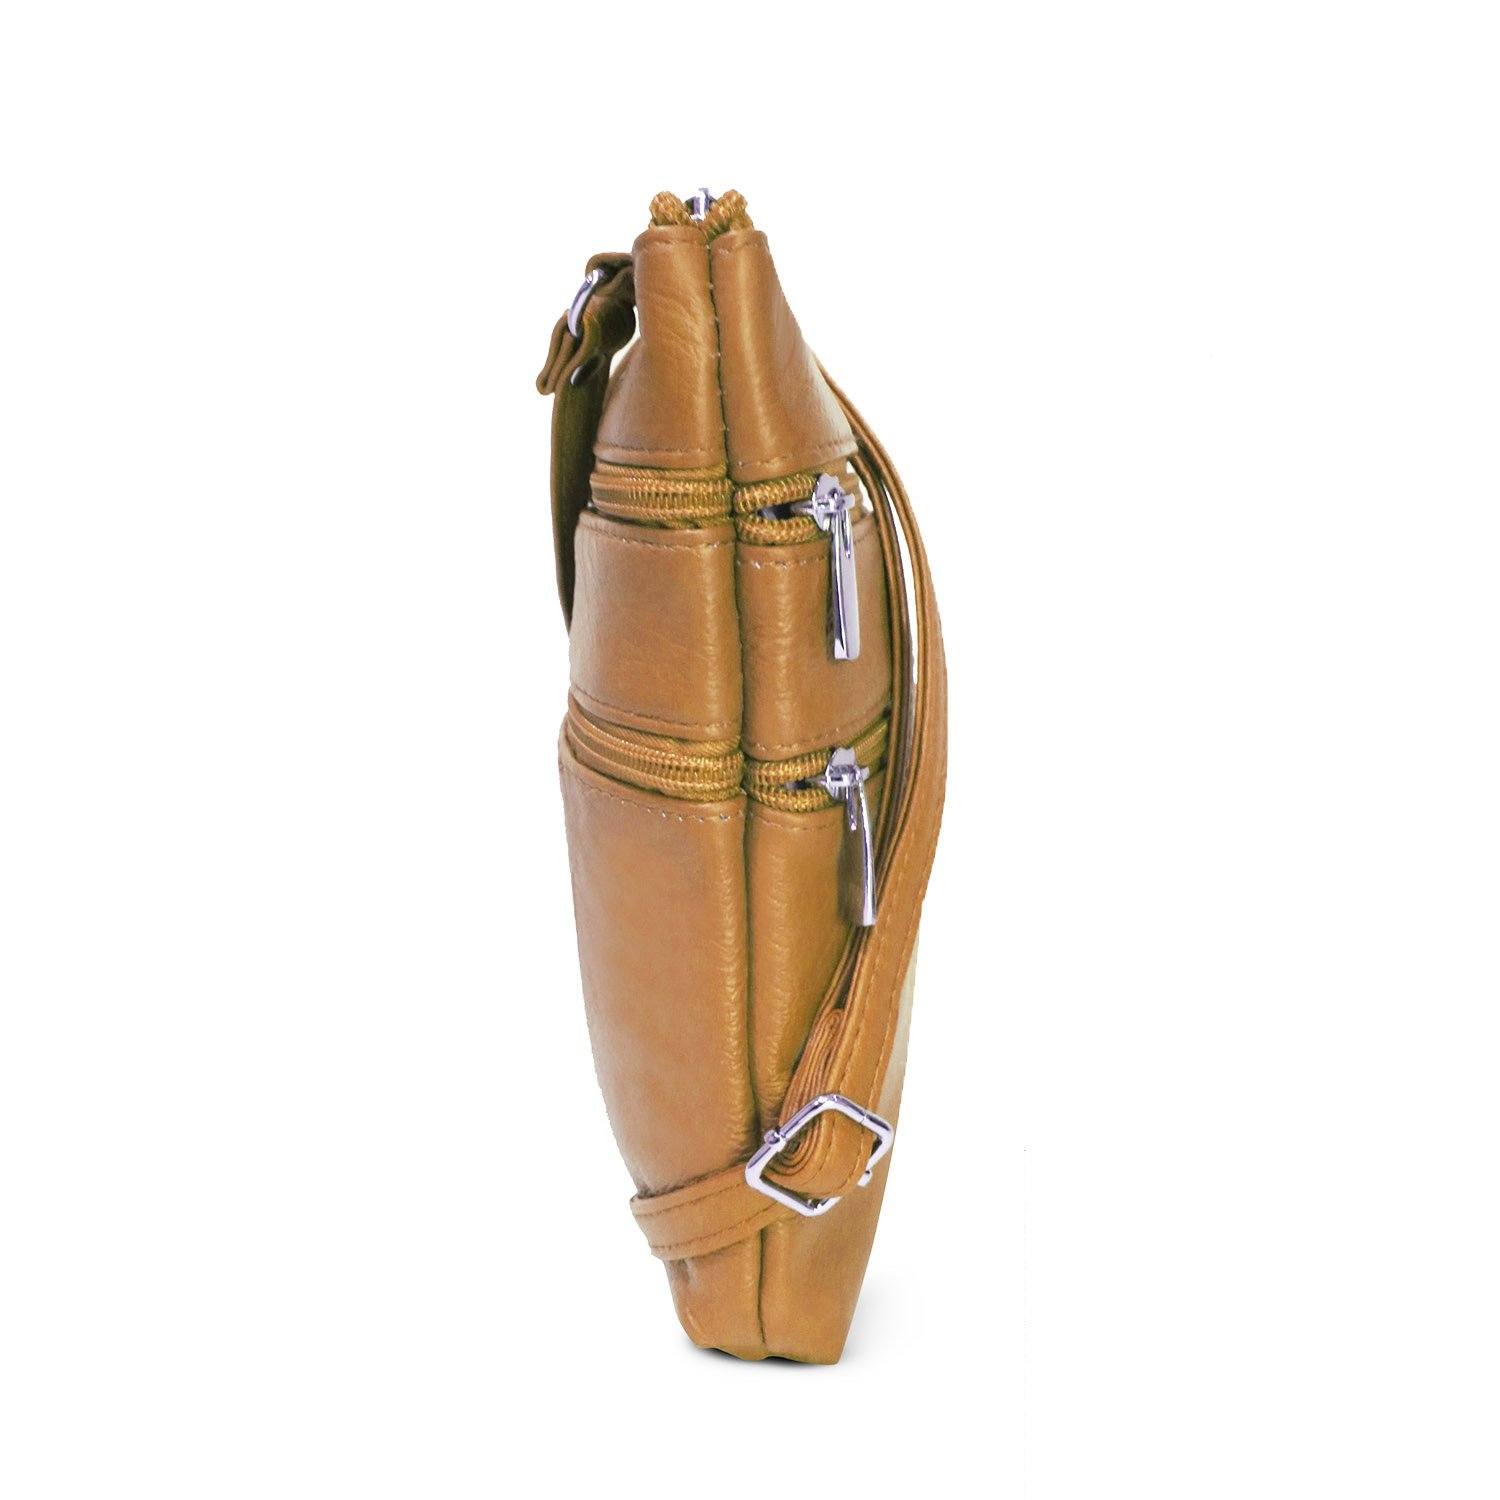 Mayanne - Genuine Leather Asymmetrical Flap Crossbody Bag